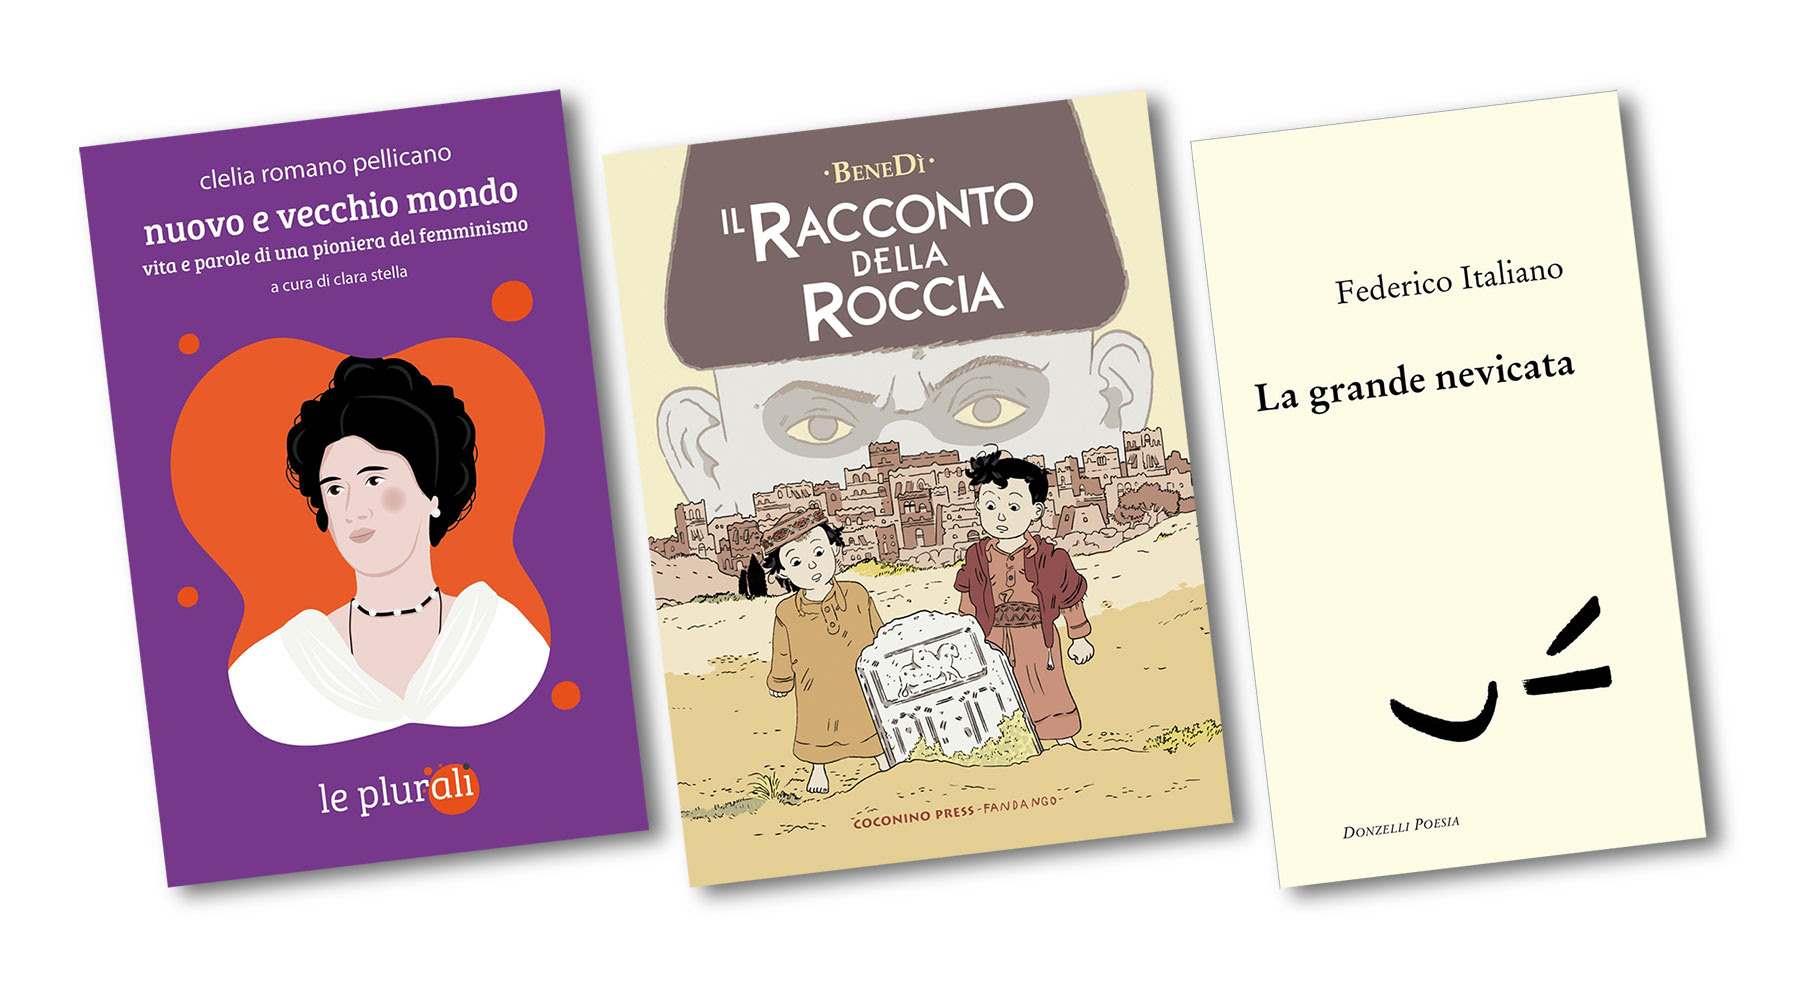 Premio Bookciak Legge: tutti i vincitori il 18 aprile alla Casa delle Letterature di Roma